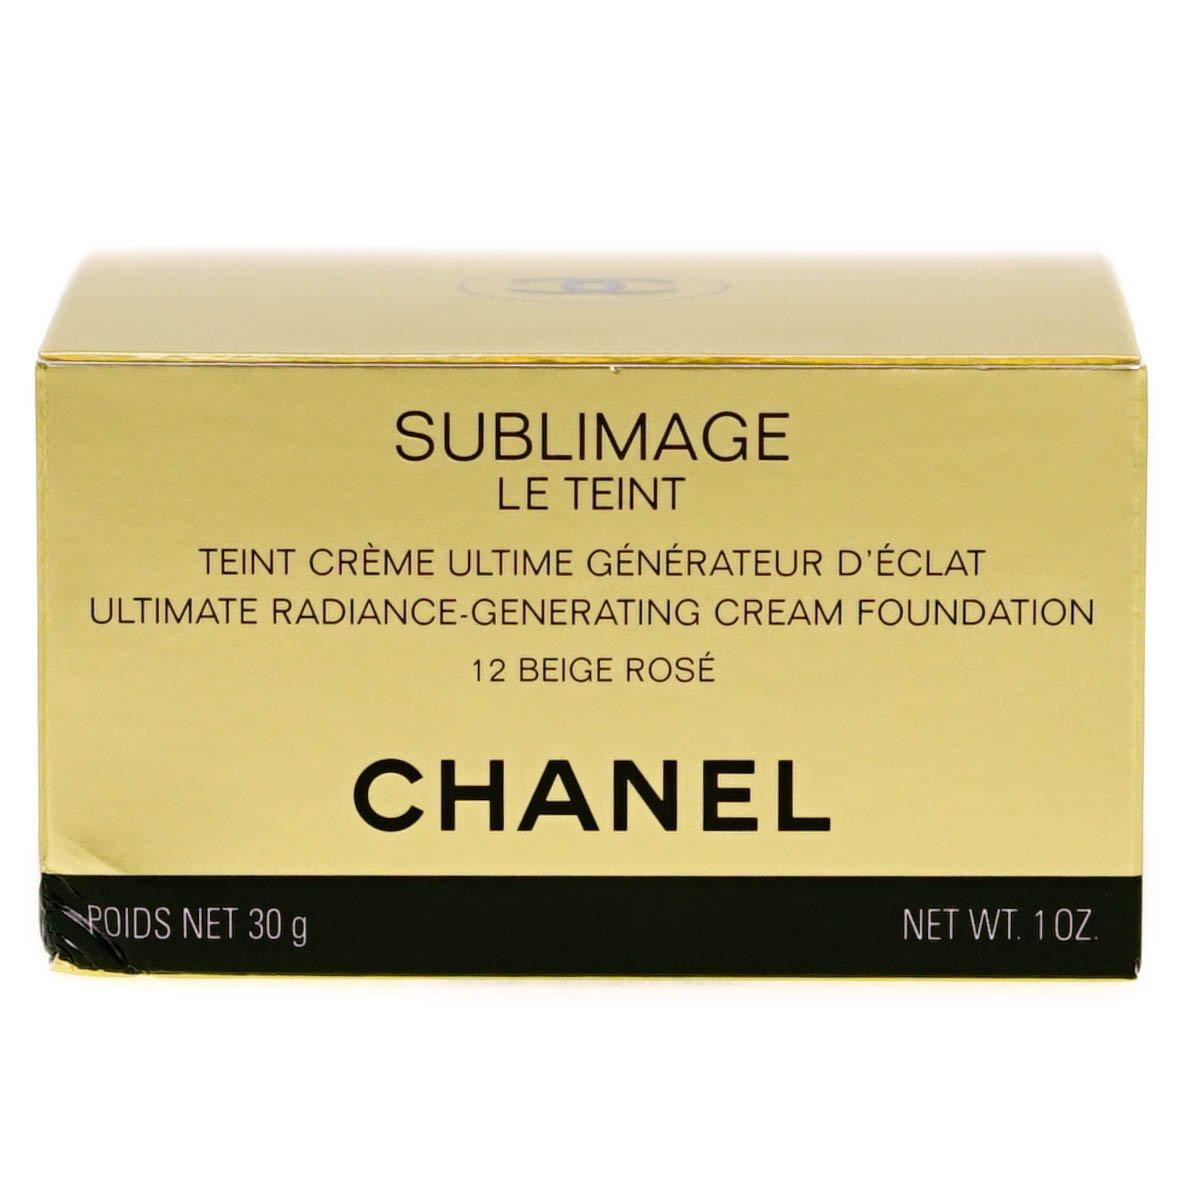 Sublimage Le Teint Ultimate Radiance-Generating Cream Foundation